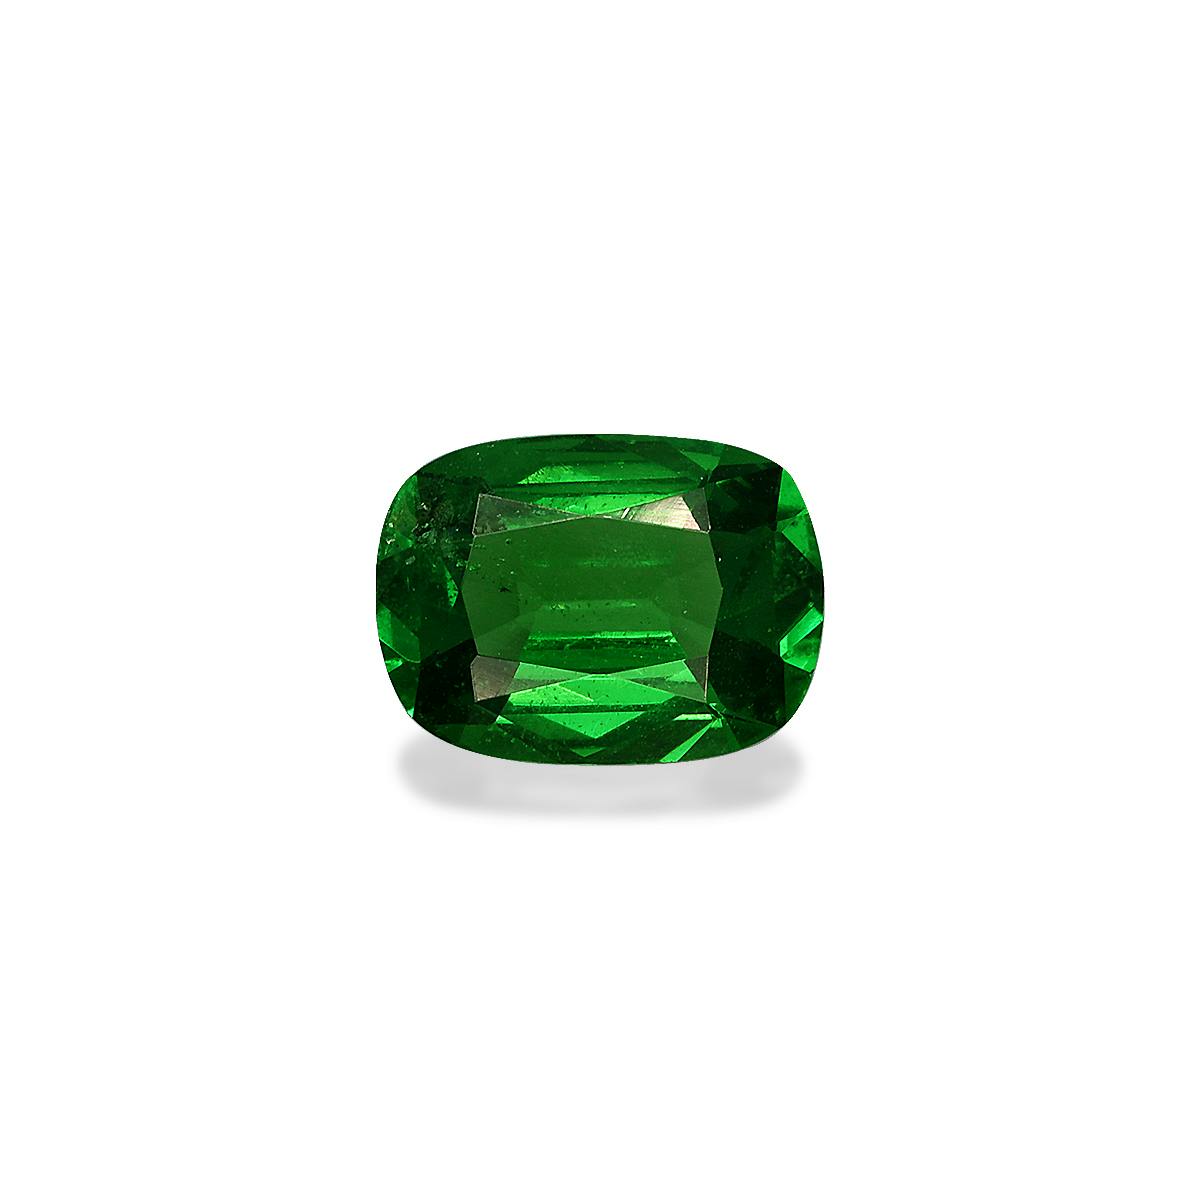 Vivid Green Tsavorite 1.05ct - 7x5mm (TS0153)